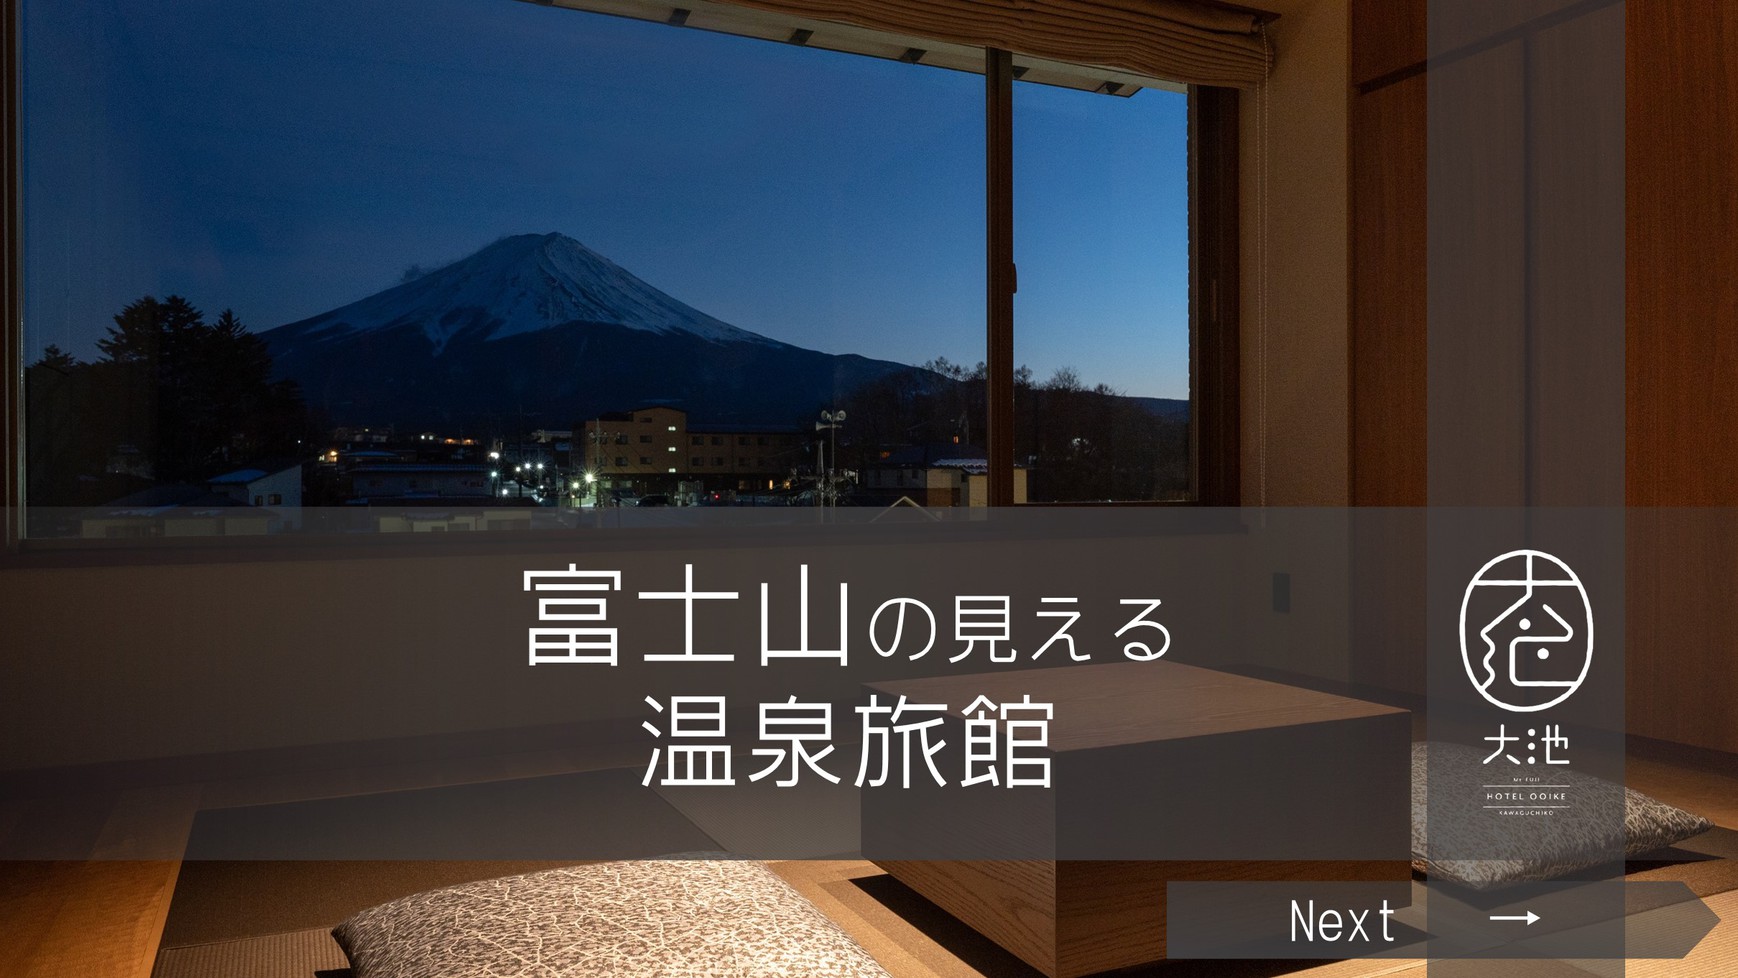 −富士山の見える温泉旅館−『朝食付プラン』【夕食無】【楽天トラベル全国1位】【夏休みの予約開始】